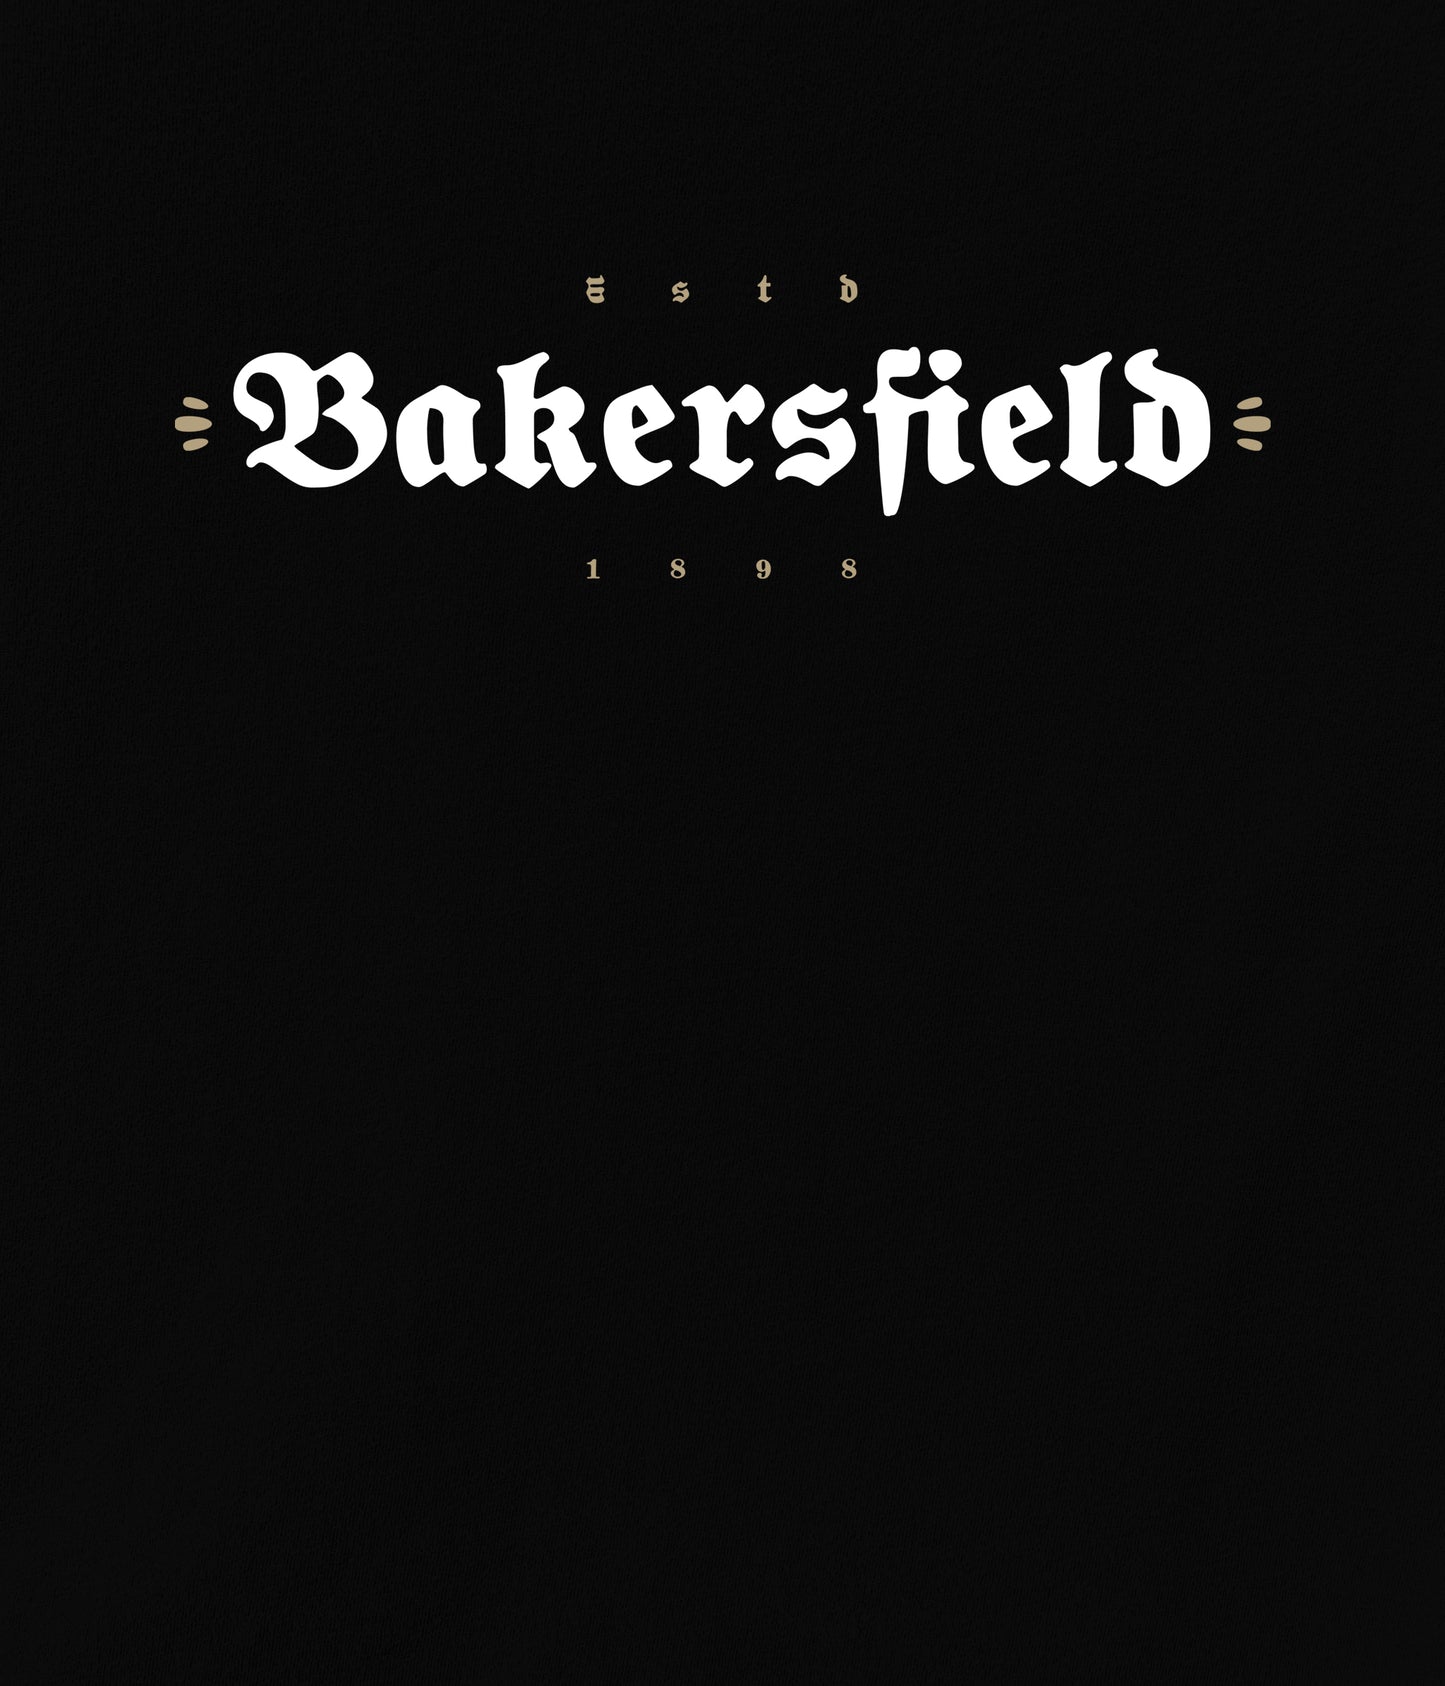 Bakersfield Established